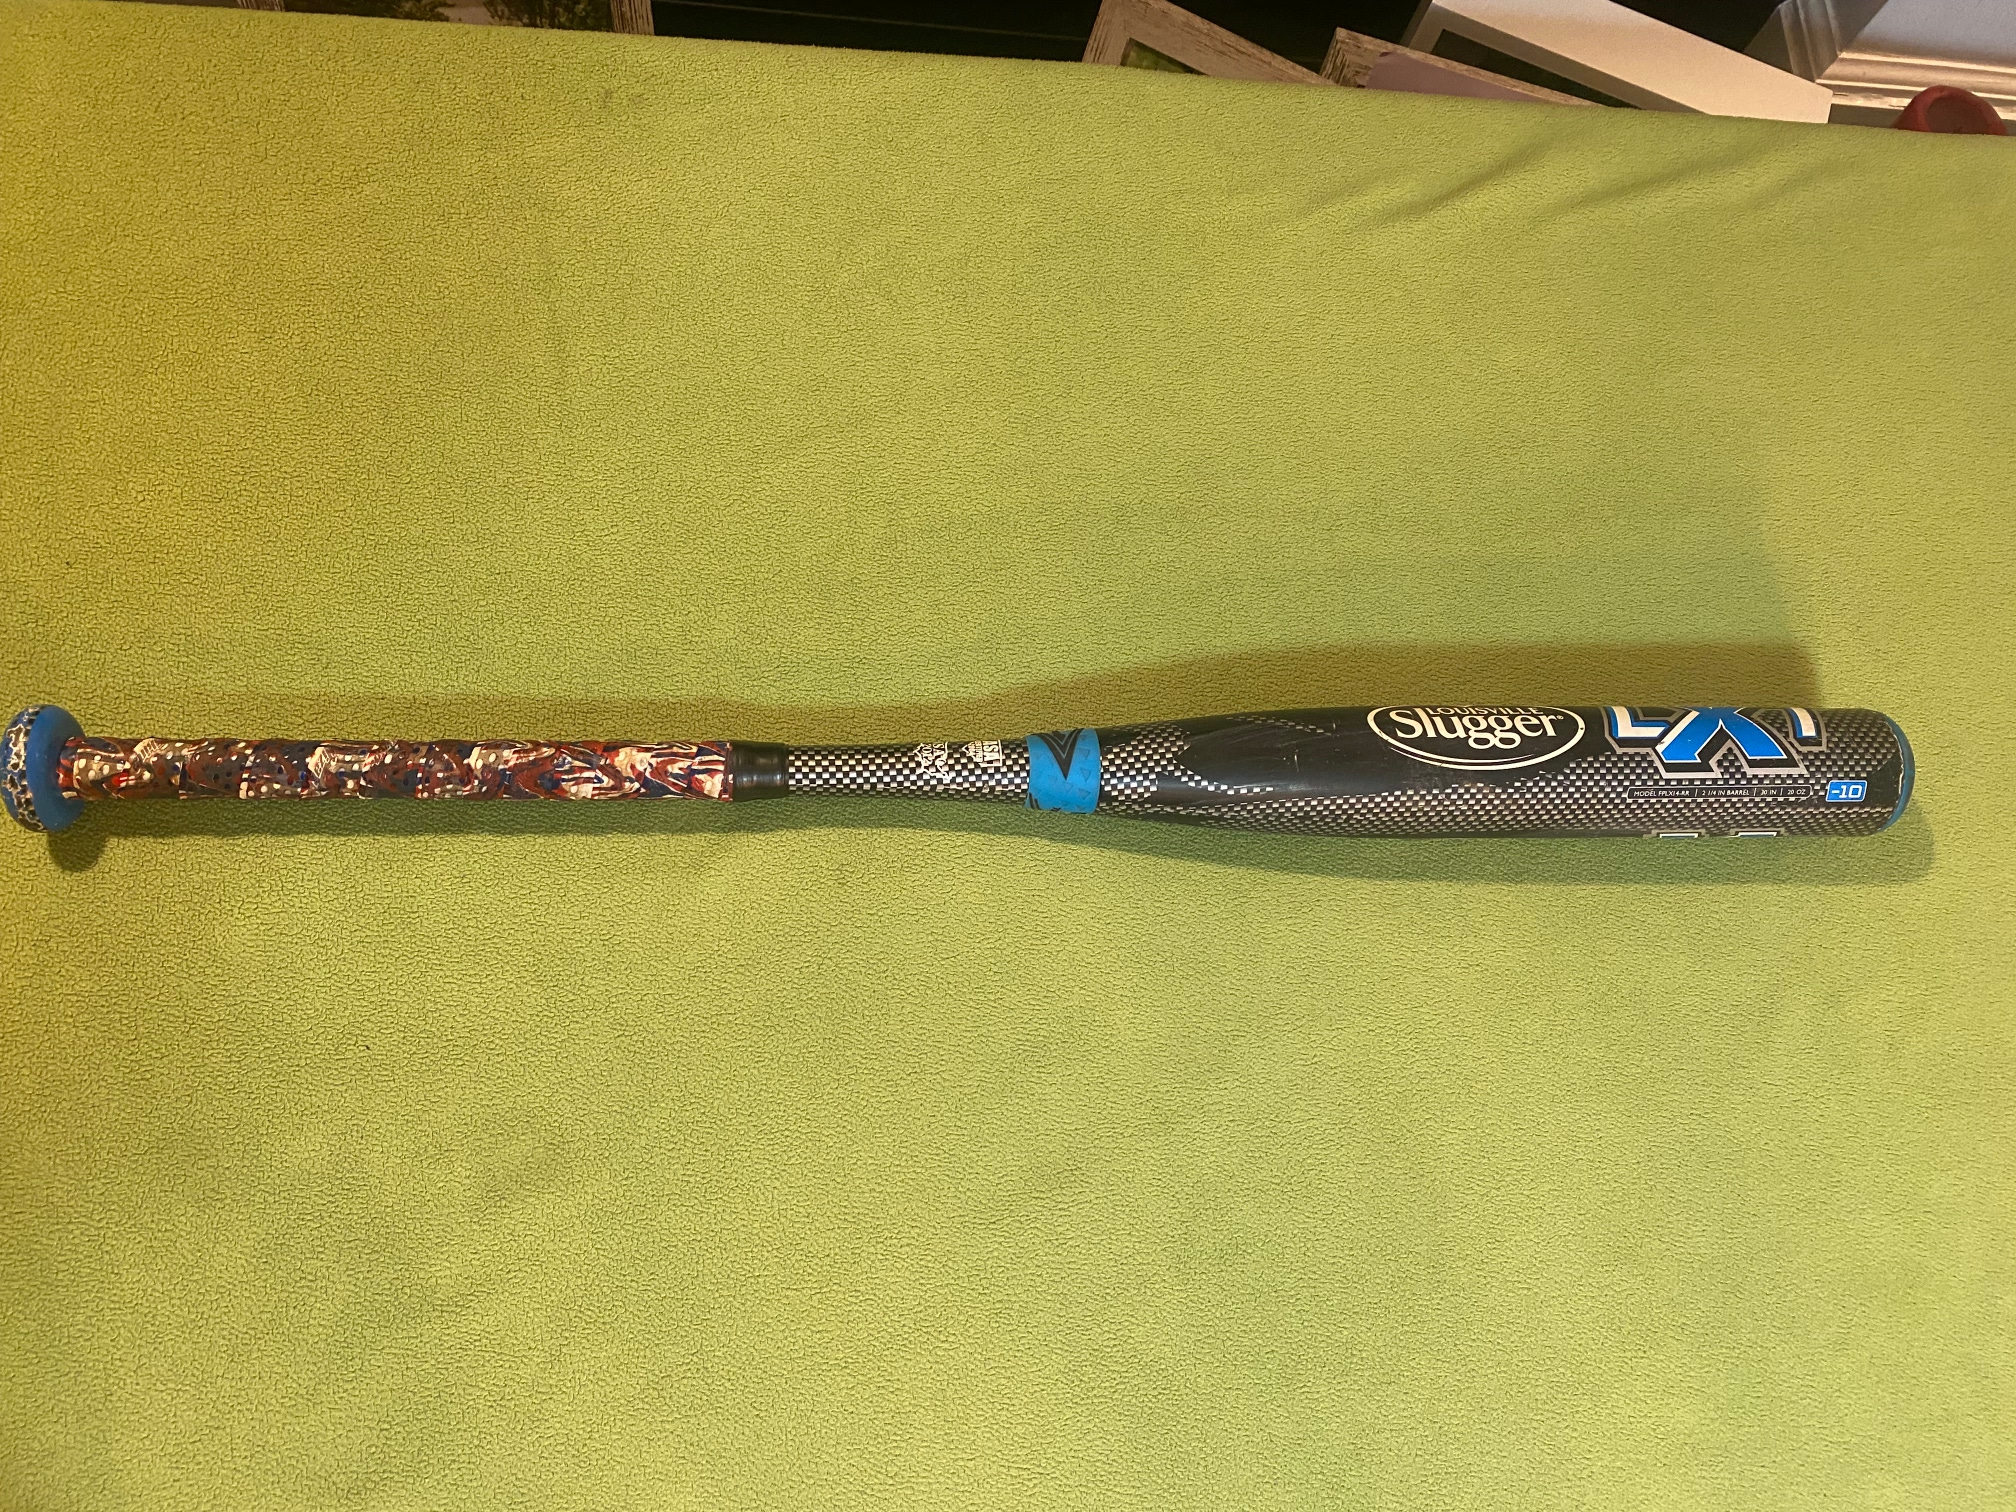 Used 2014 Louisville Slugger Composite LXT Bat (-10) 20 oz 30"